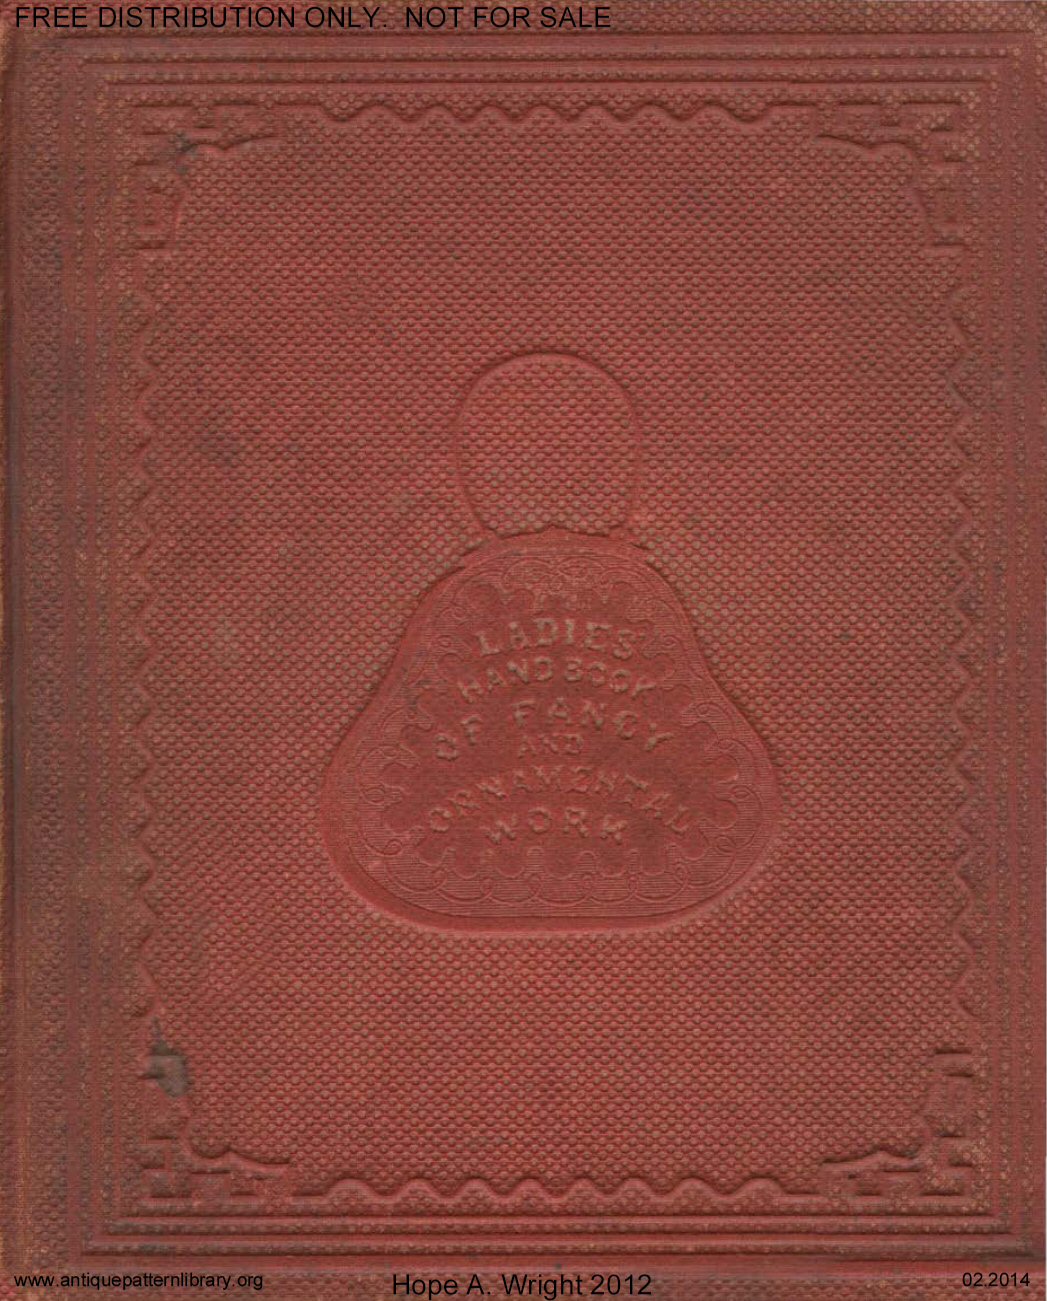 C-HW001 Ladies' Hand Book of Fancy and Ornamental Work